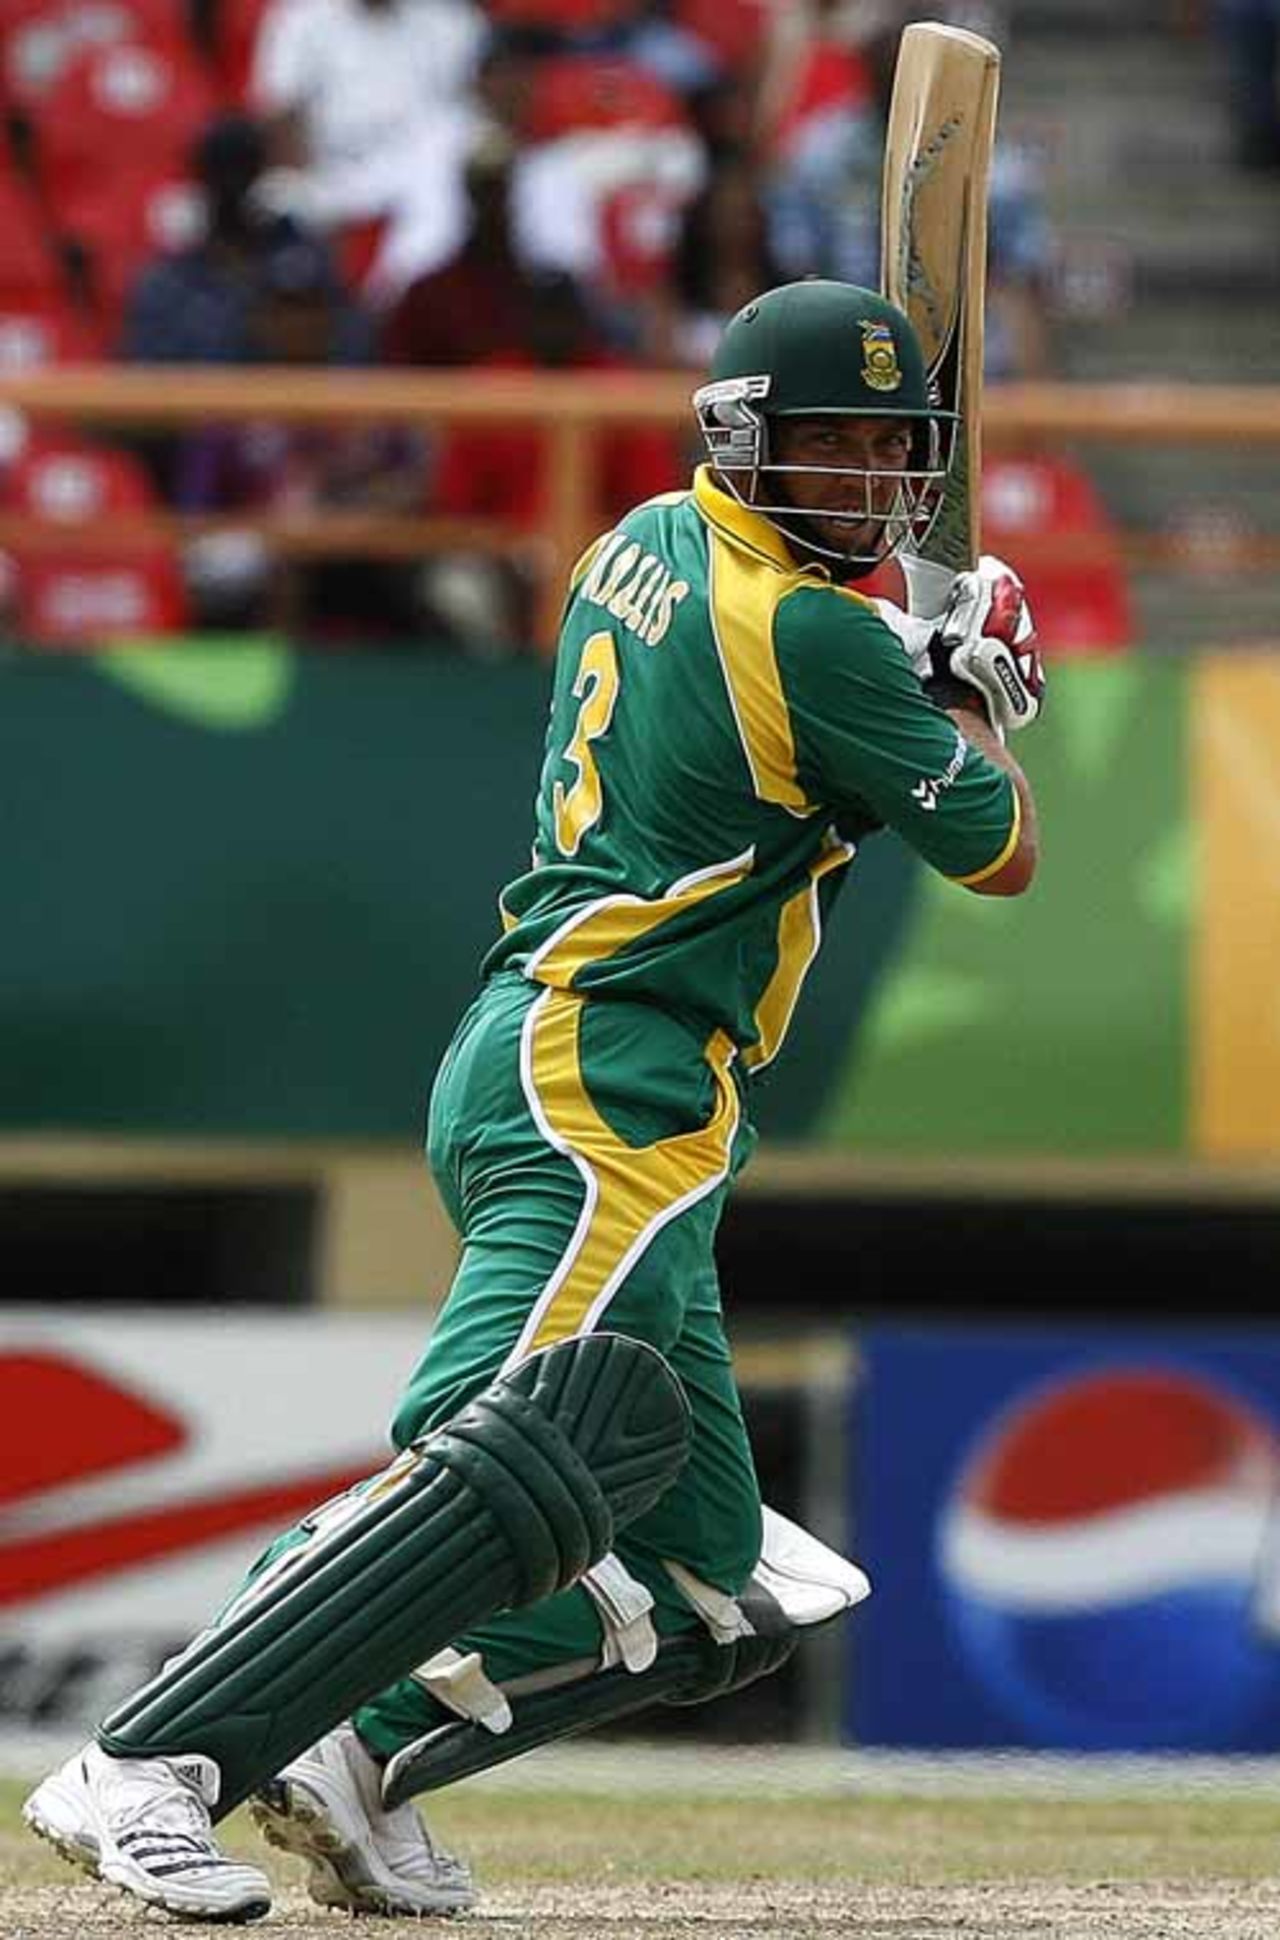 Jacques Kallis picks up runs backward of square, Bangladesh vs South Africa, Super Eights, Guyana, April 7, 2007